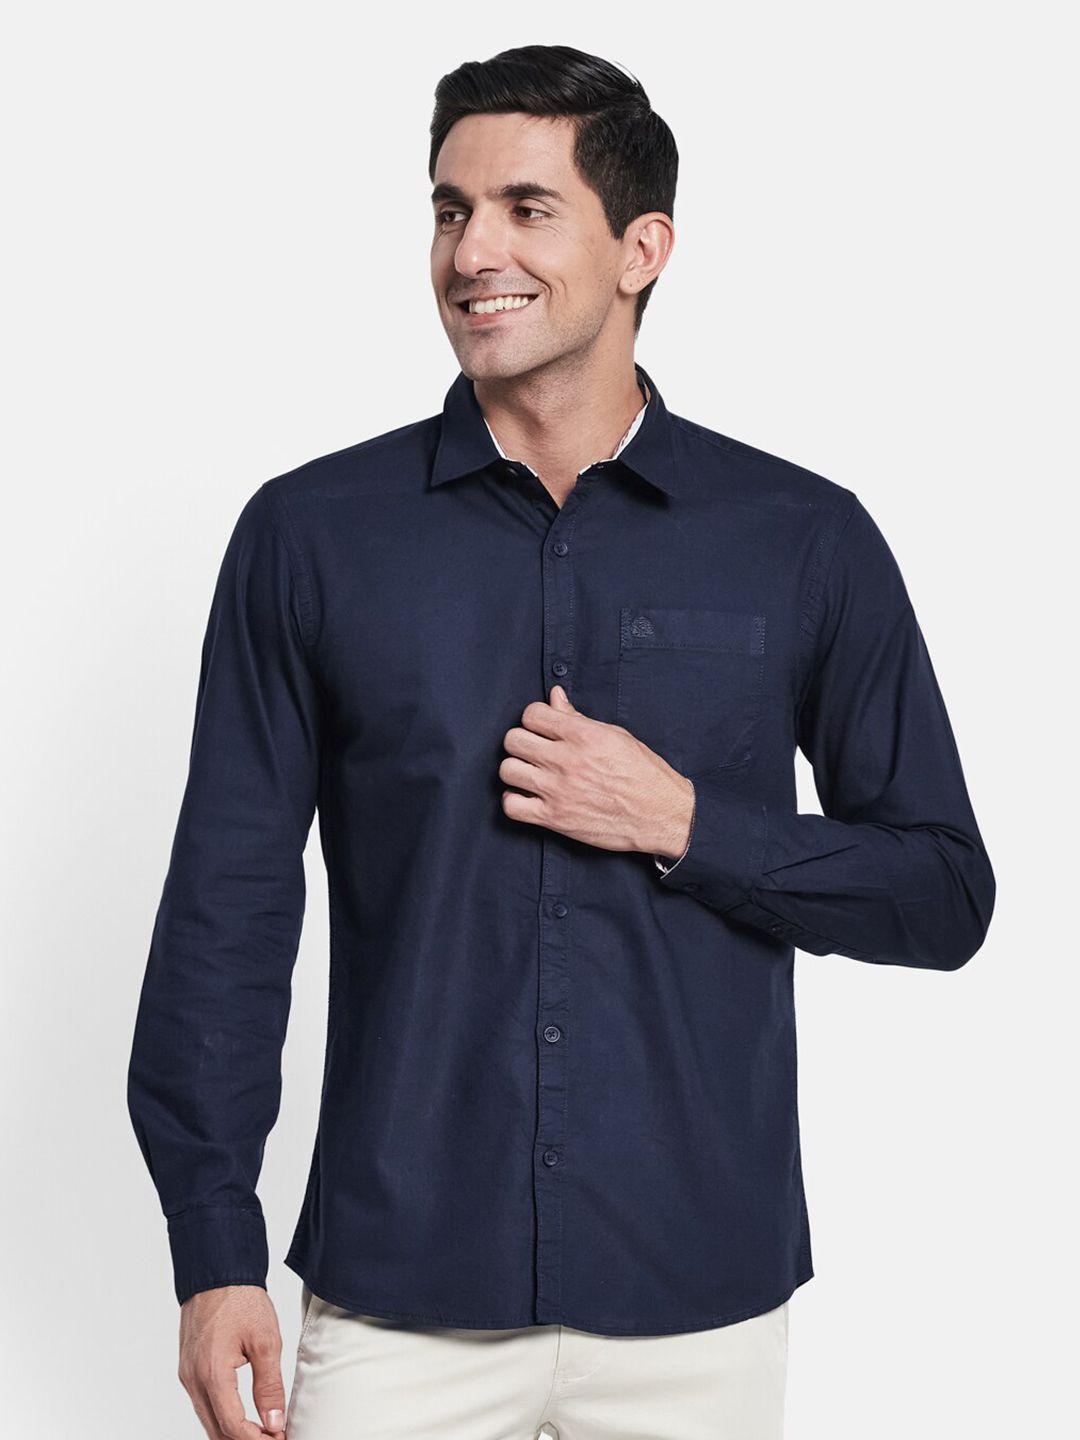 mettle men navy blue casual shirt